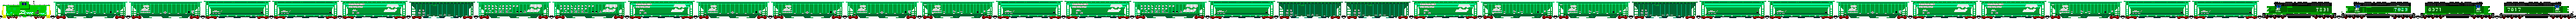 treni 131